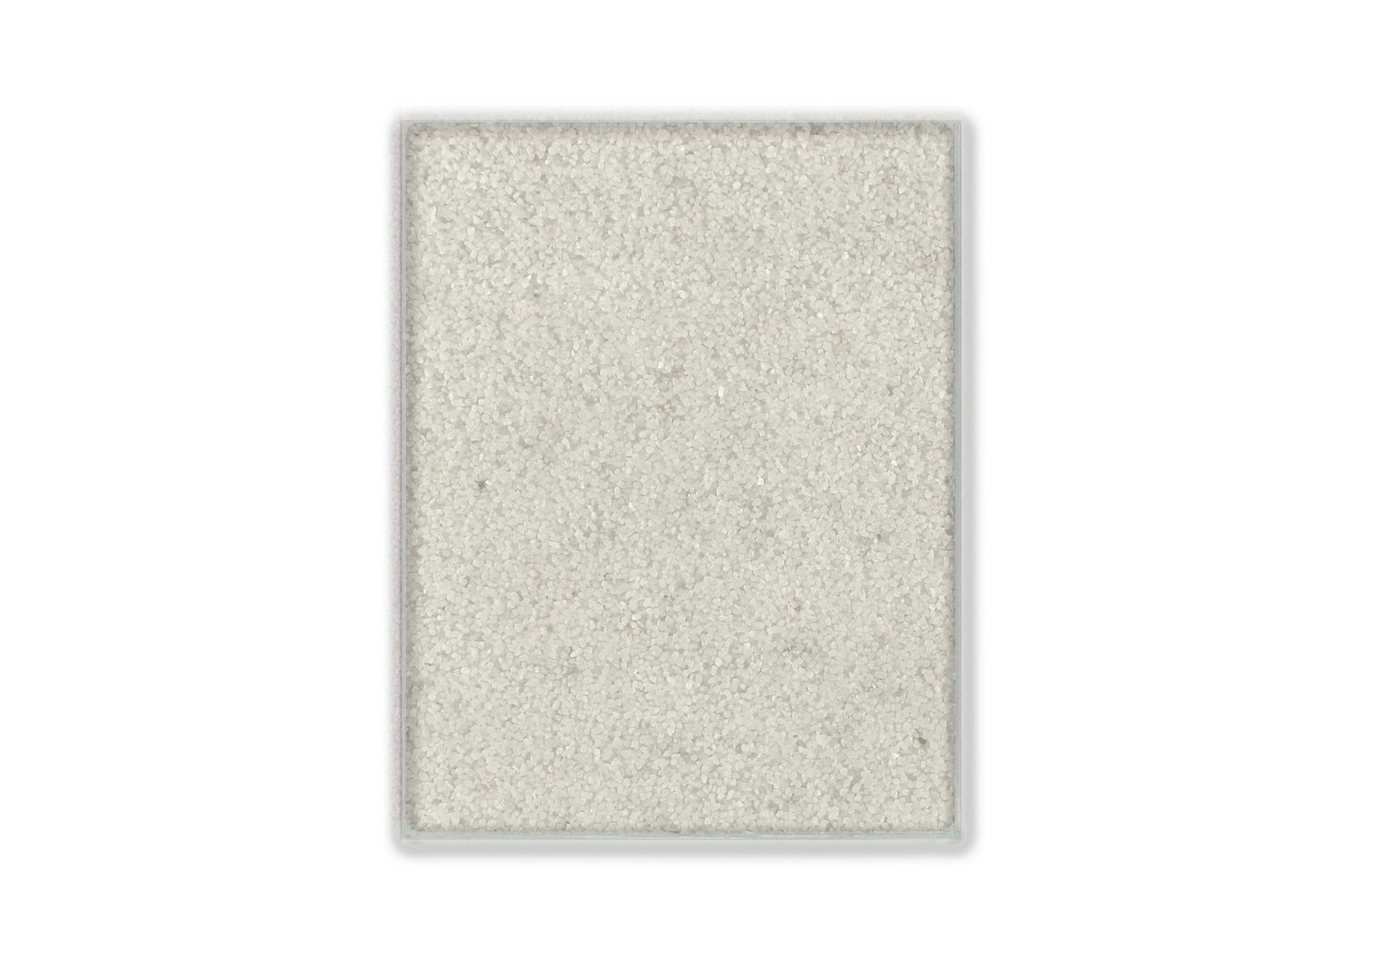 Terralith® Designboden Farbmuster Kompaktboden -bianco-, Originalware aus der Charge, die wir in diesem Moment im Abverkauf haben. von Terralith®